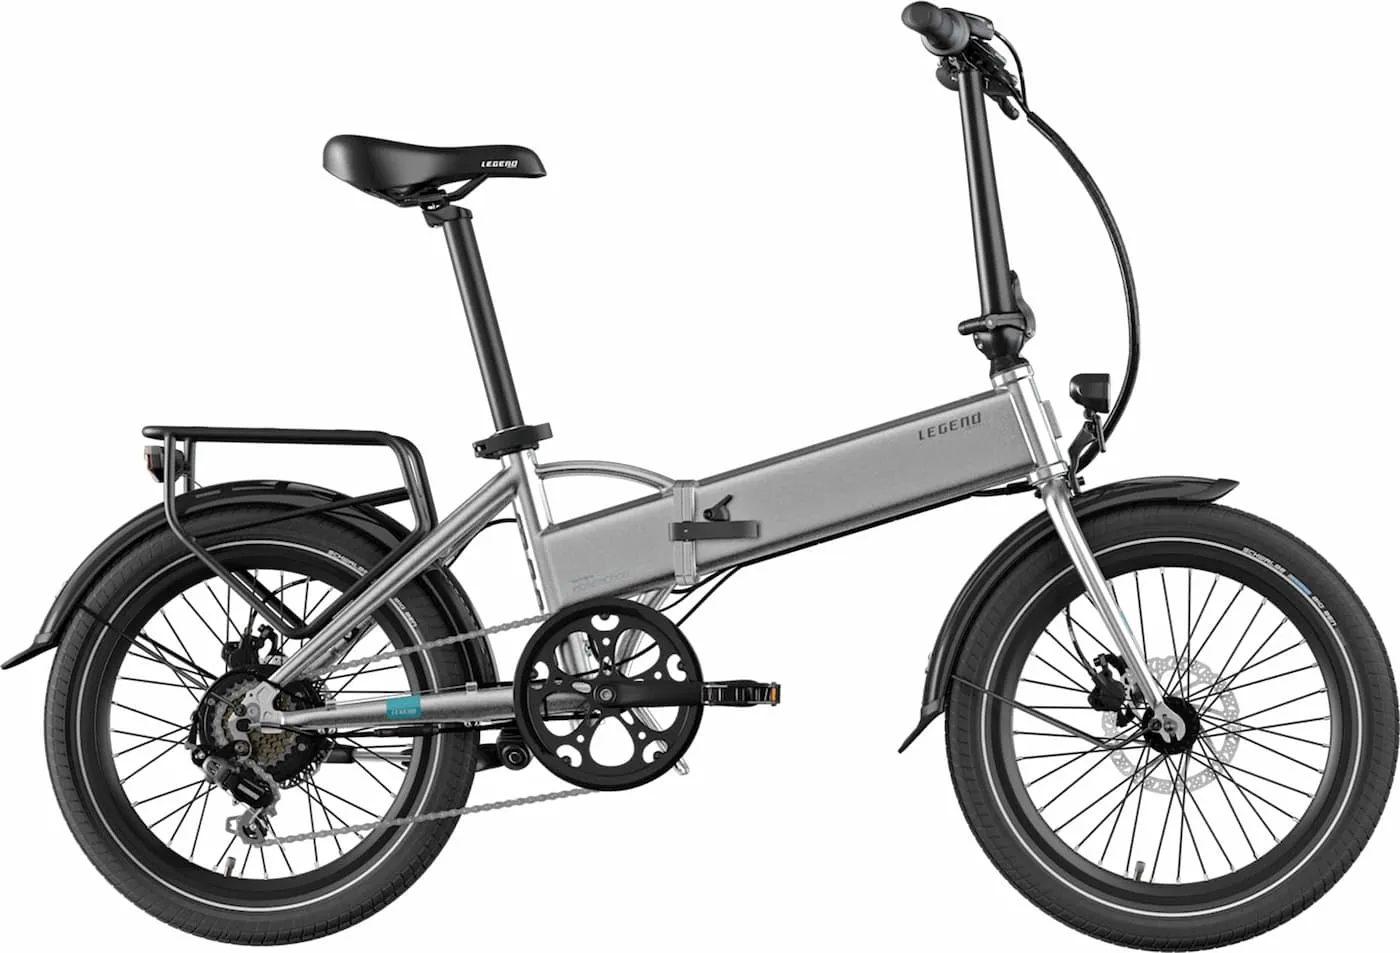 Smart Folding Electric Bike Legend Monza Standard Battery 10.4ah Grey